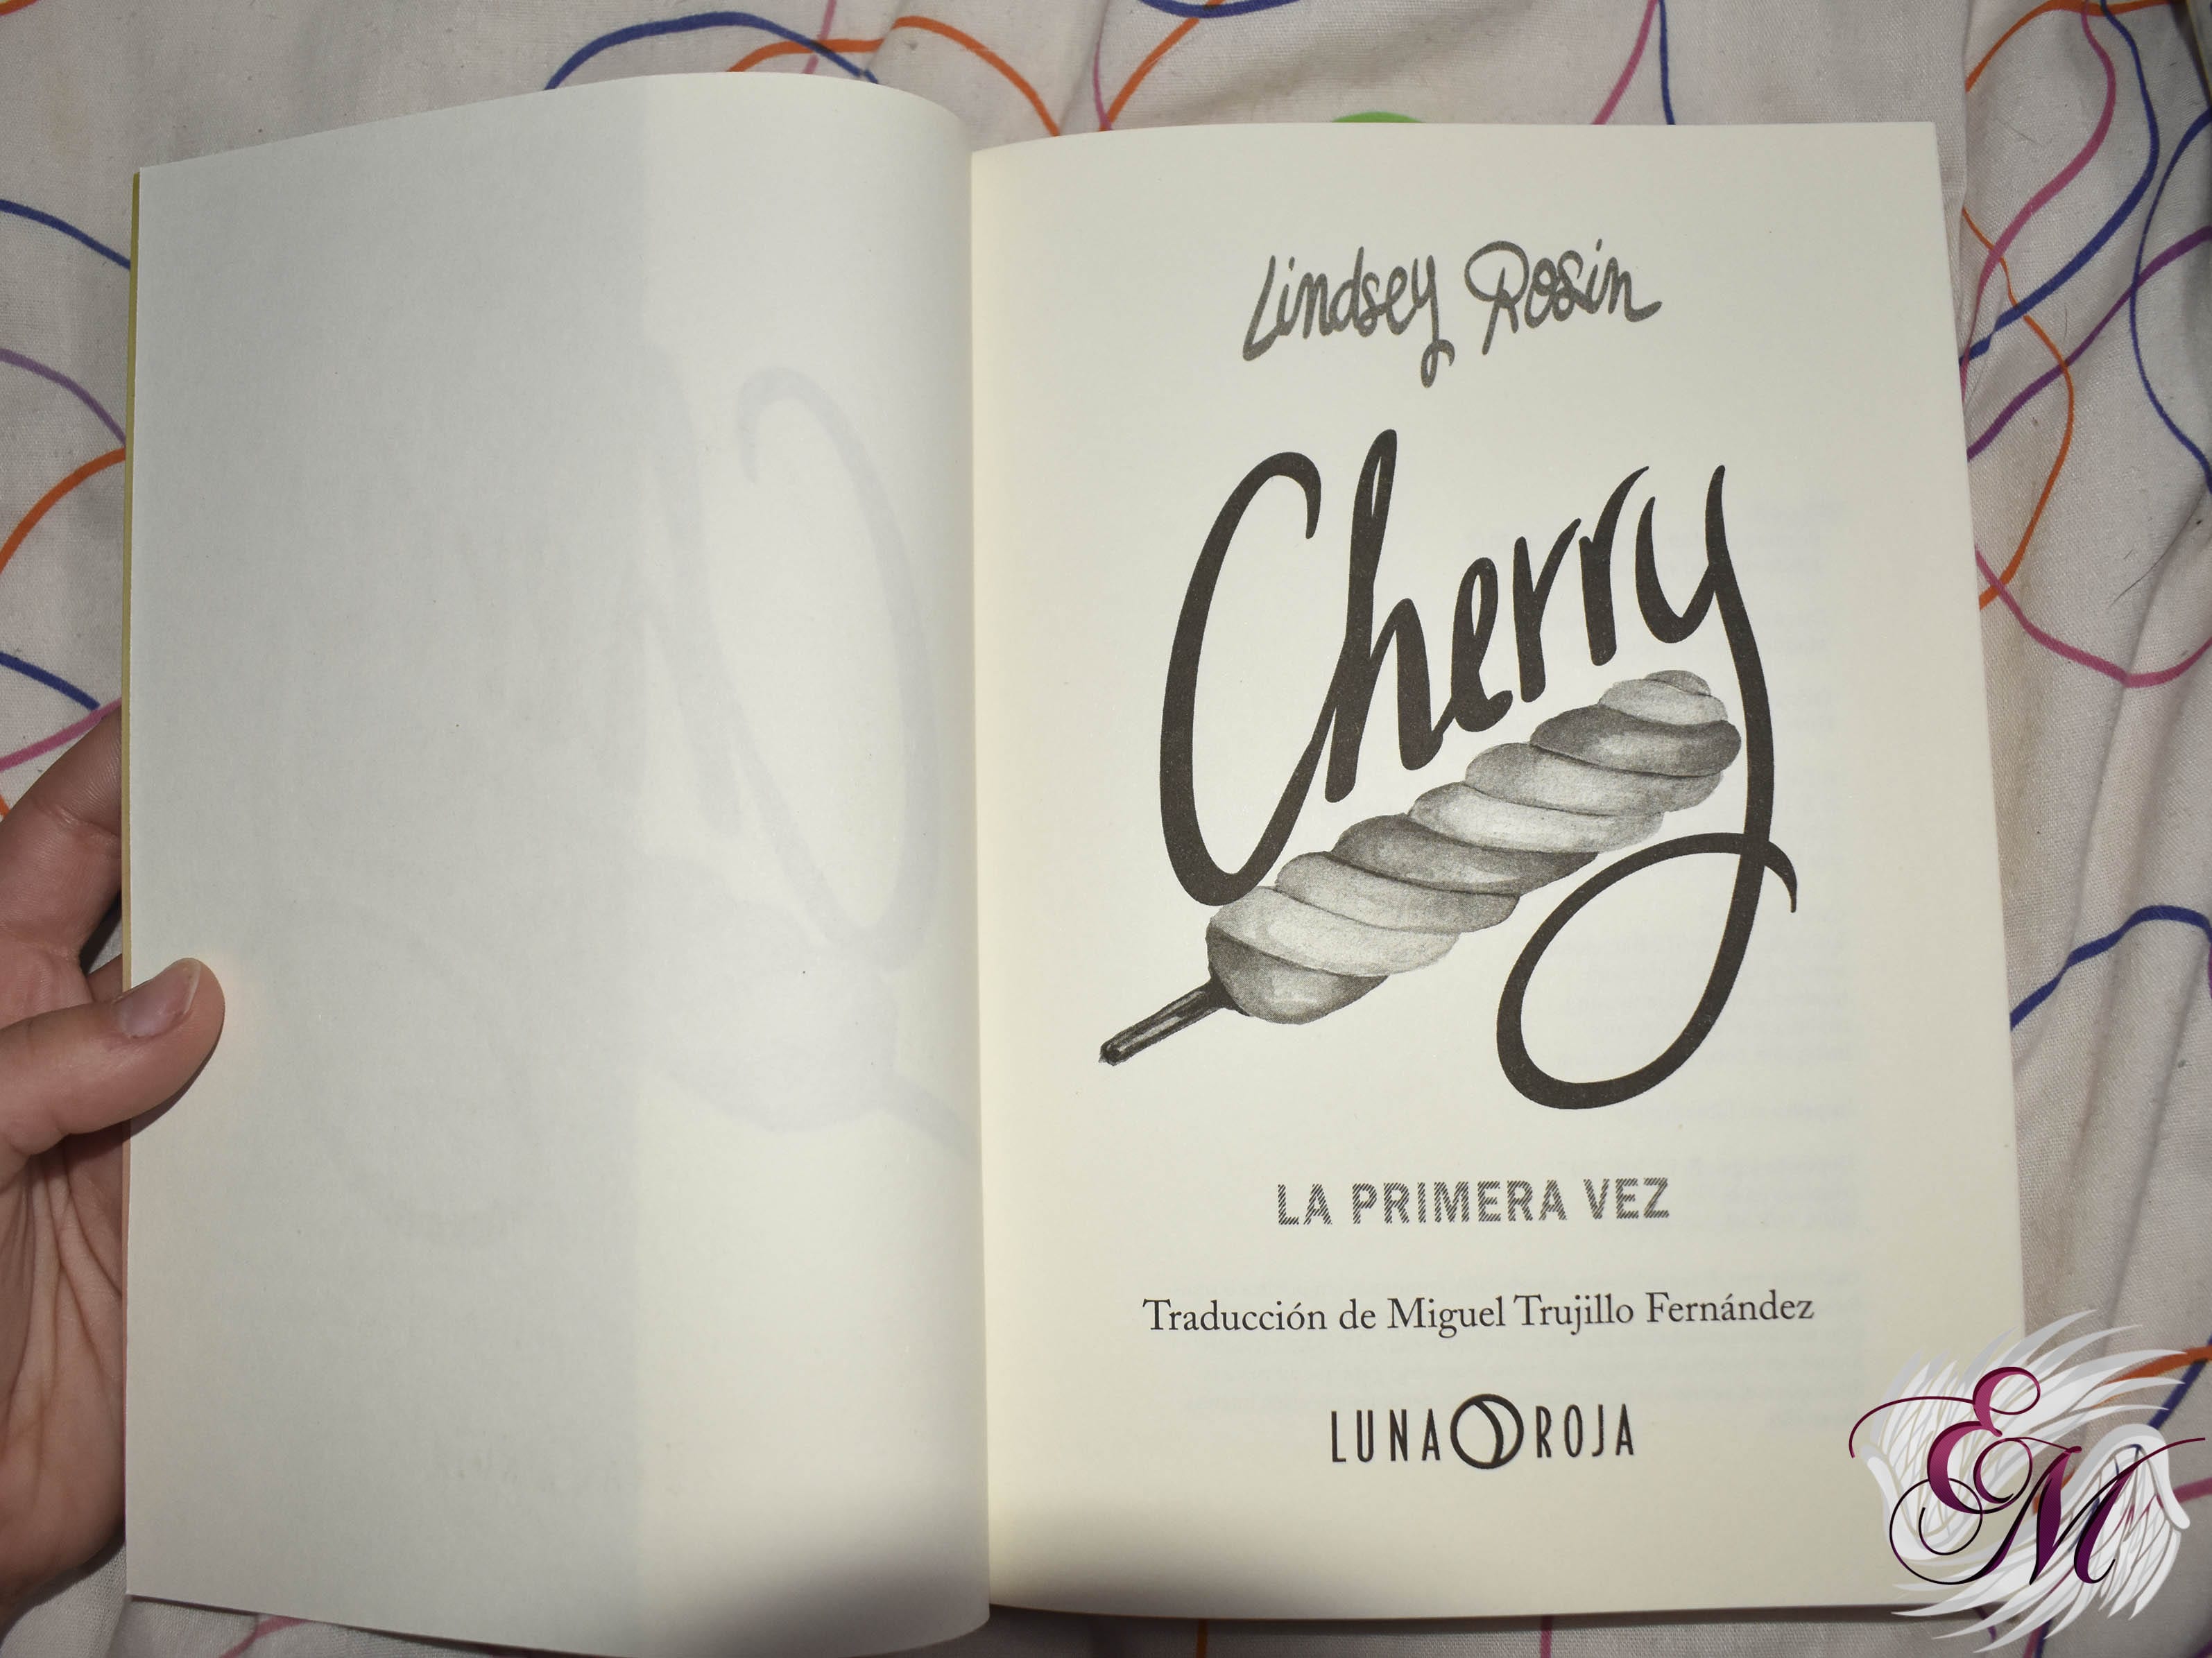 Cherry: la primera vez, de Lindsey Rosin - Reseña